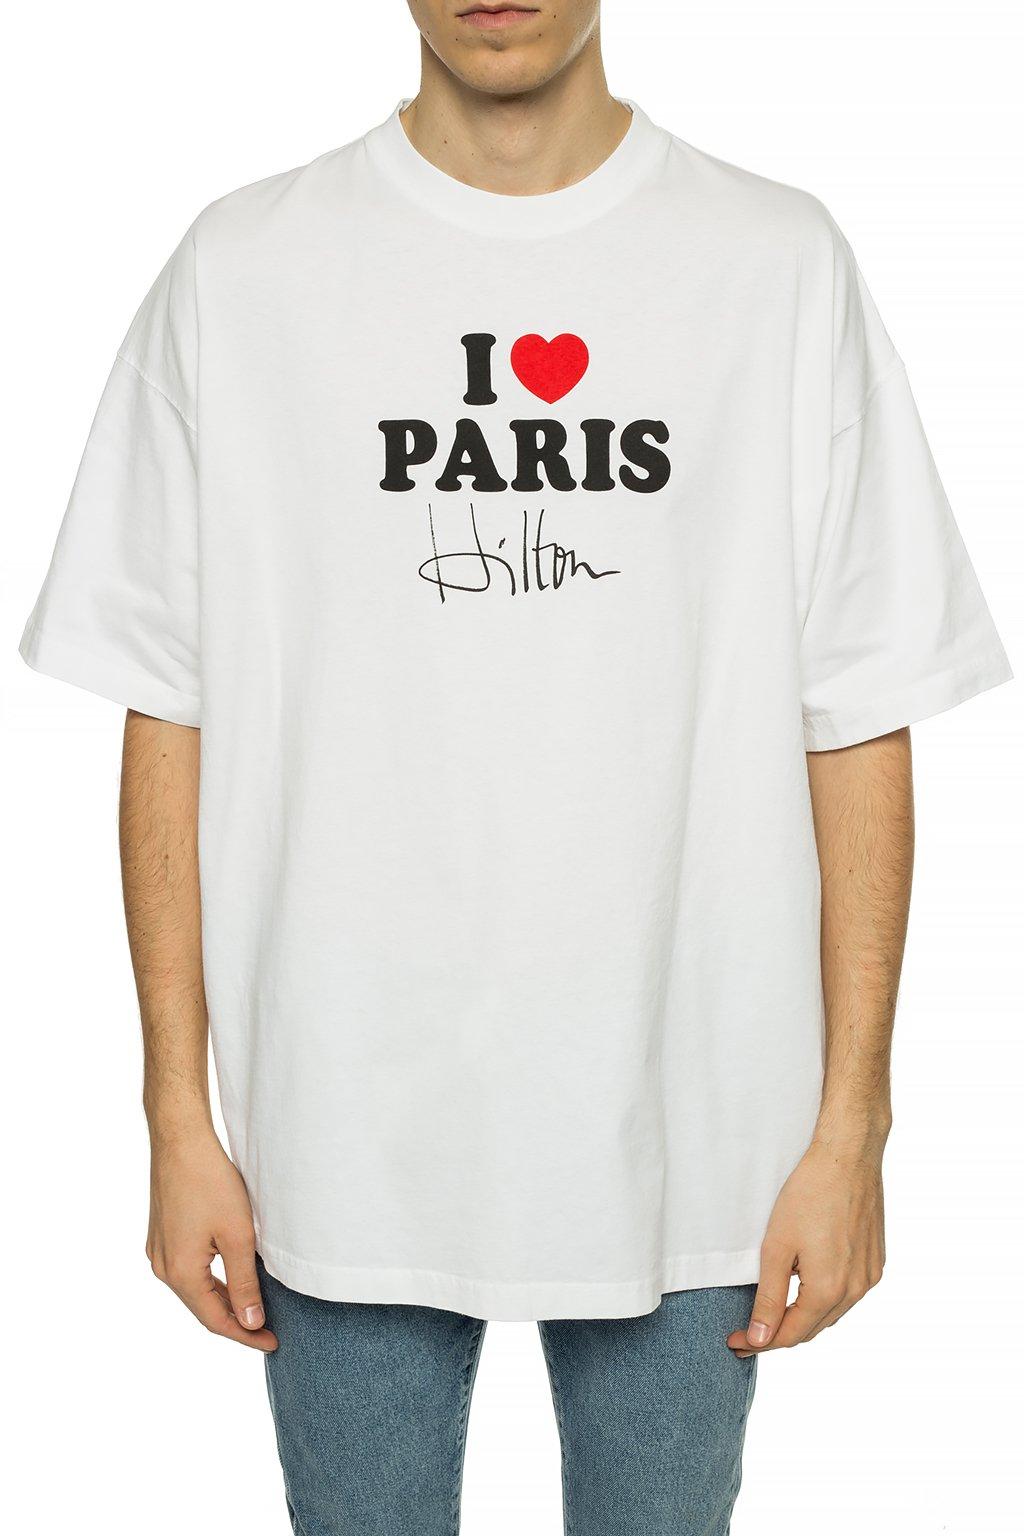 Vetements X Paris Hilton I Love Paris Tee in White for Men | Lyst